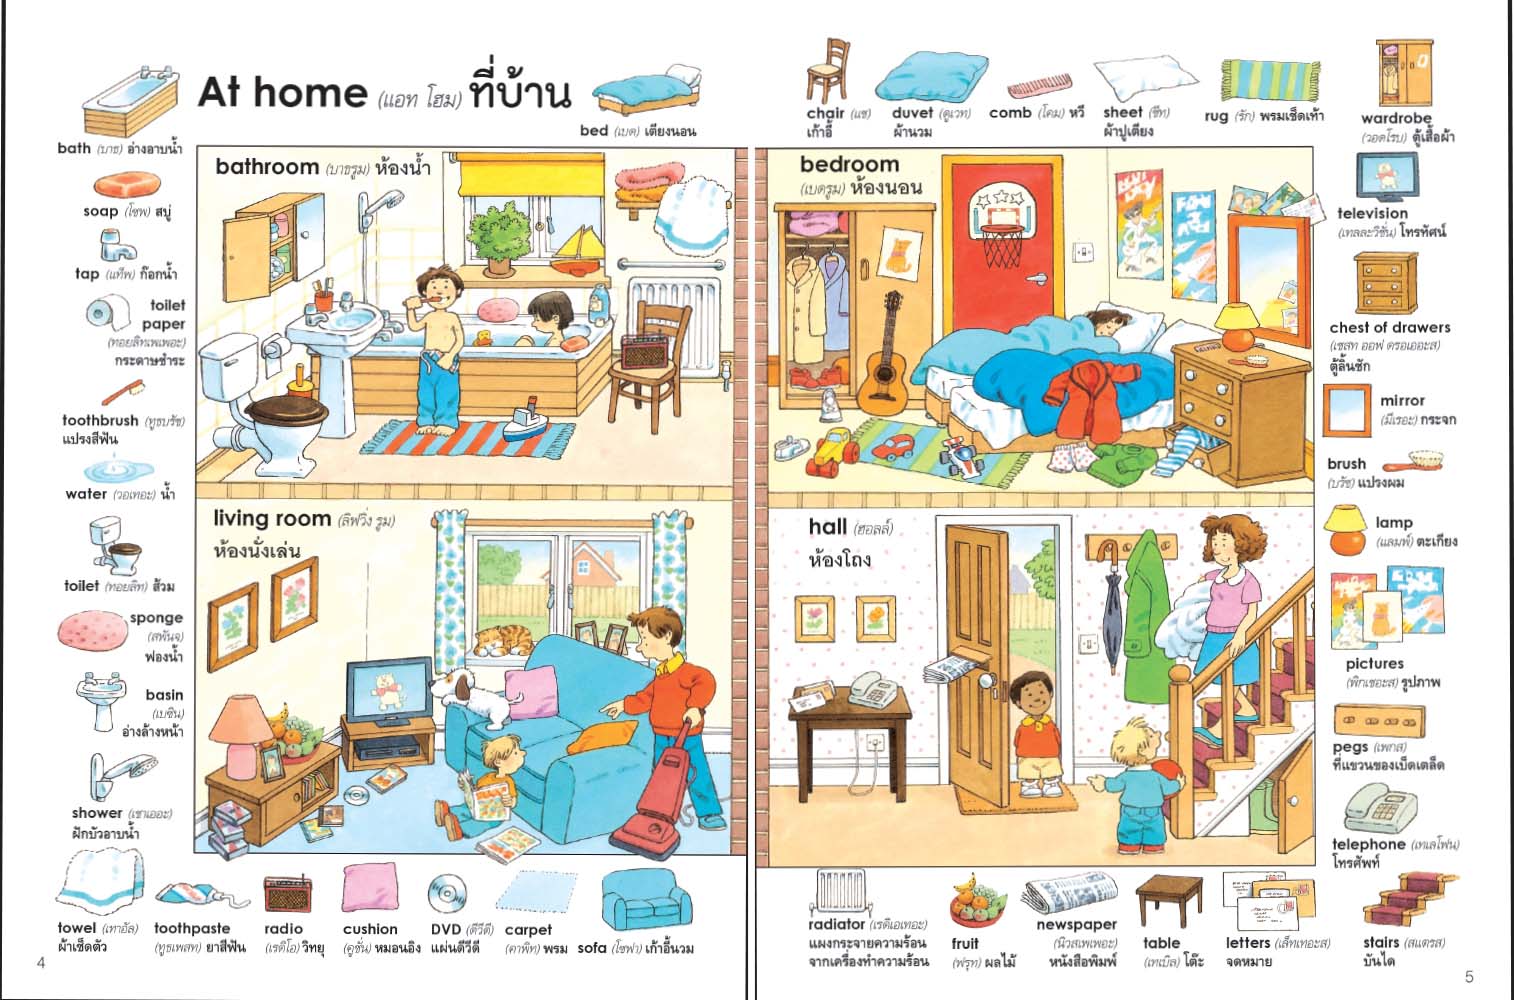 1000 คำศัพท์ภาษาอังกฤษสำหรับเด็ก (ปกใหม่) | Nanmeebooks